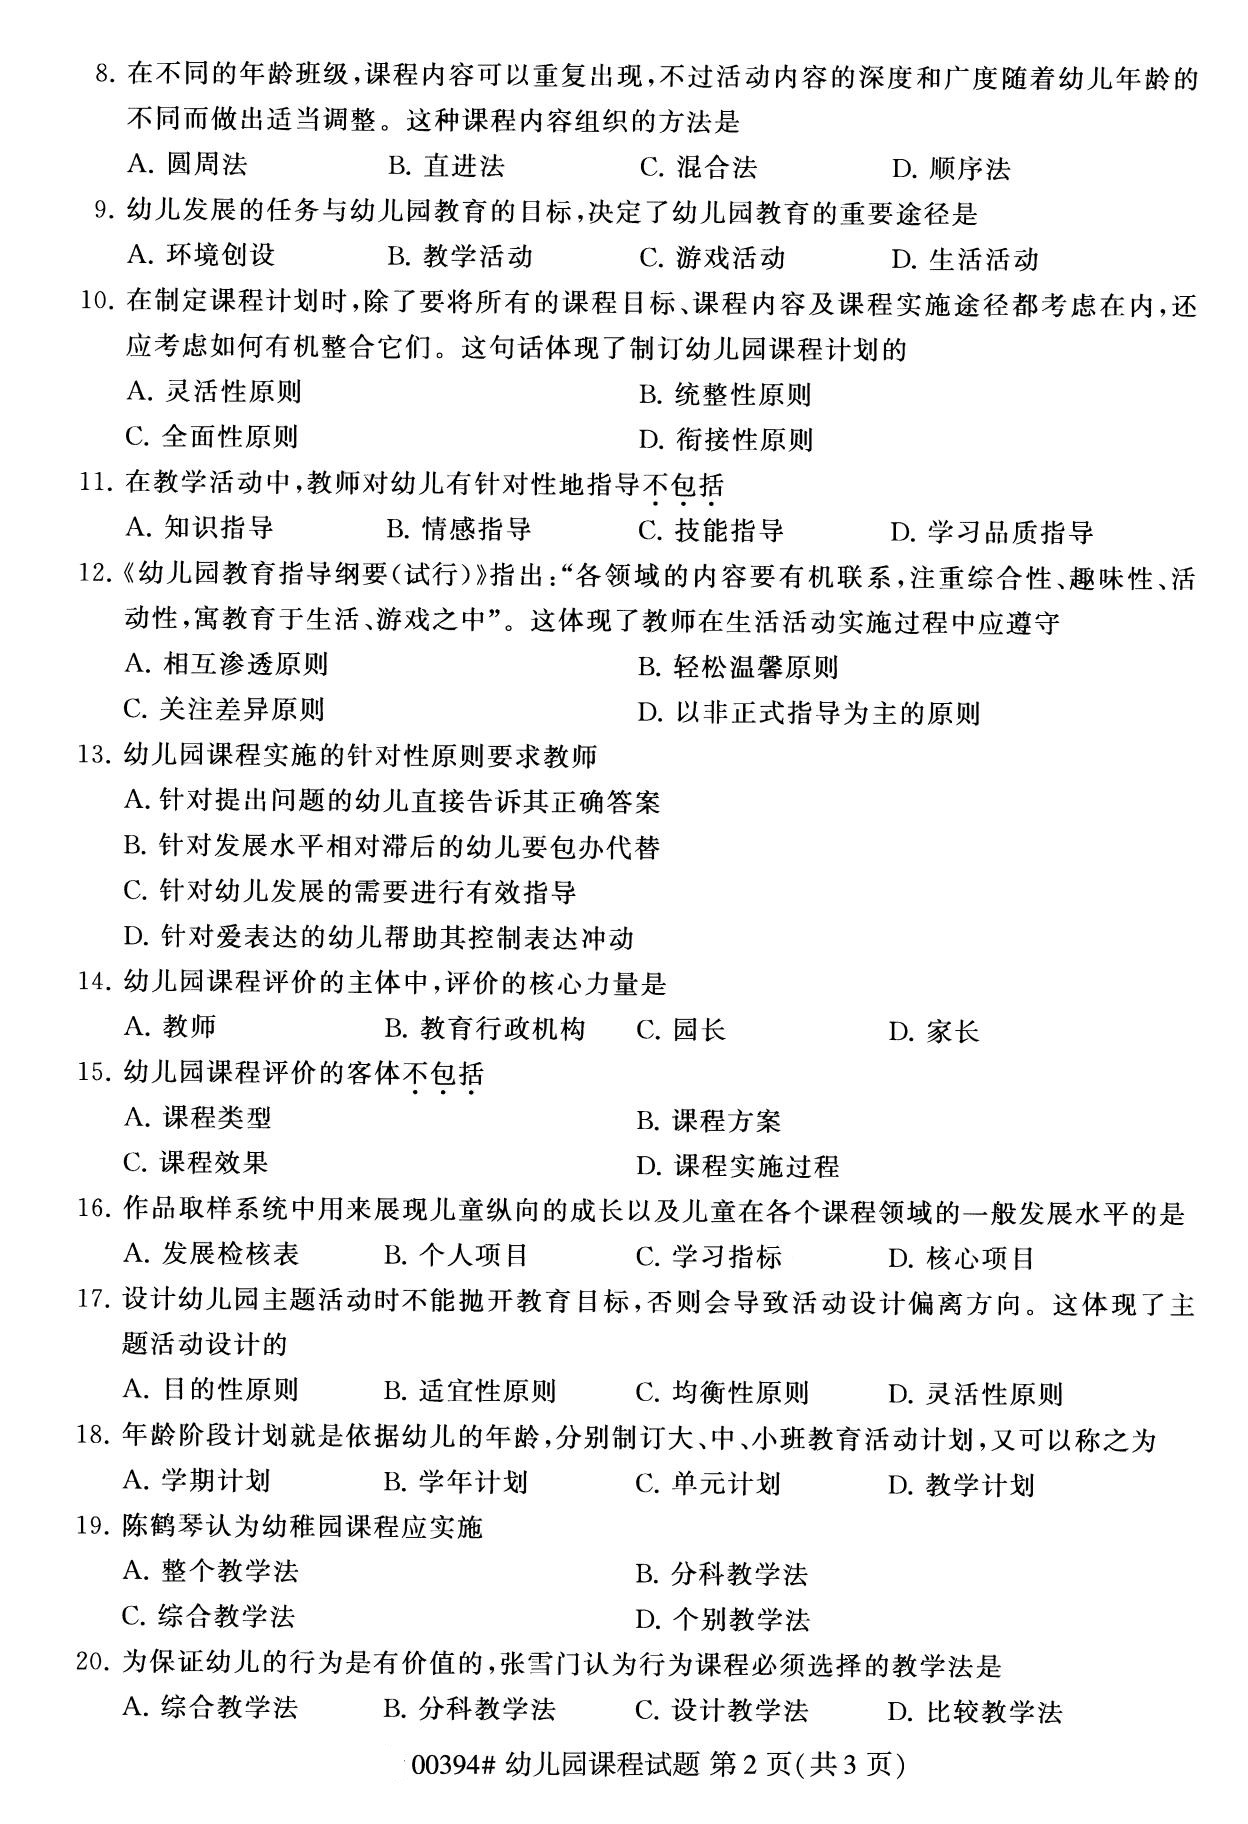 福建省2020年8月自学考试本科00394幼儿园课程真题(图2)